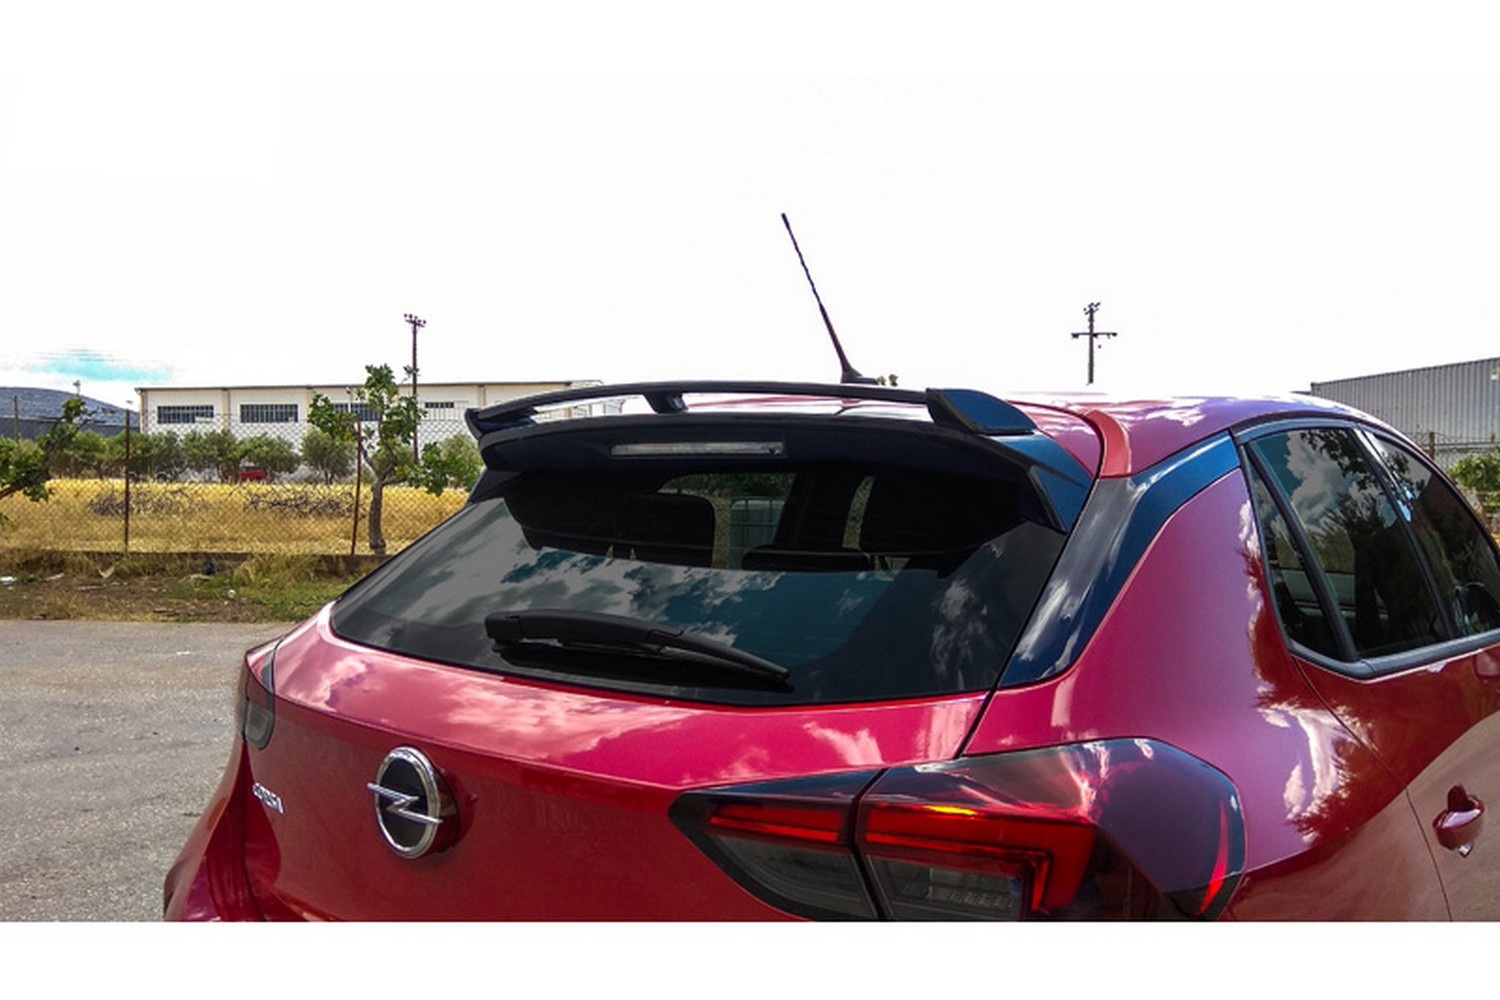 https://www.carparts-expert.com/images/stories/virtuemart/product/ope6cosu-opel-corsa-f-2019-5-door-hatchback-roof-spoiler-1.jpg